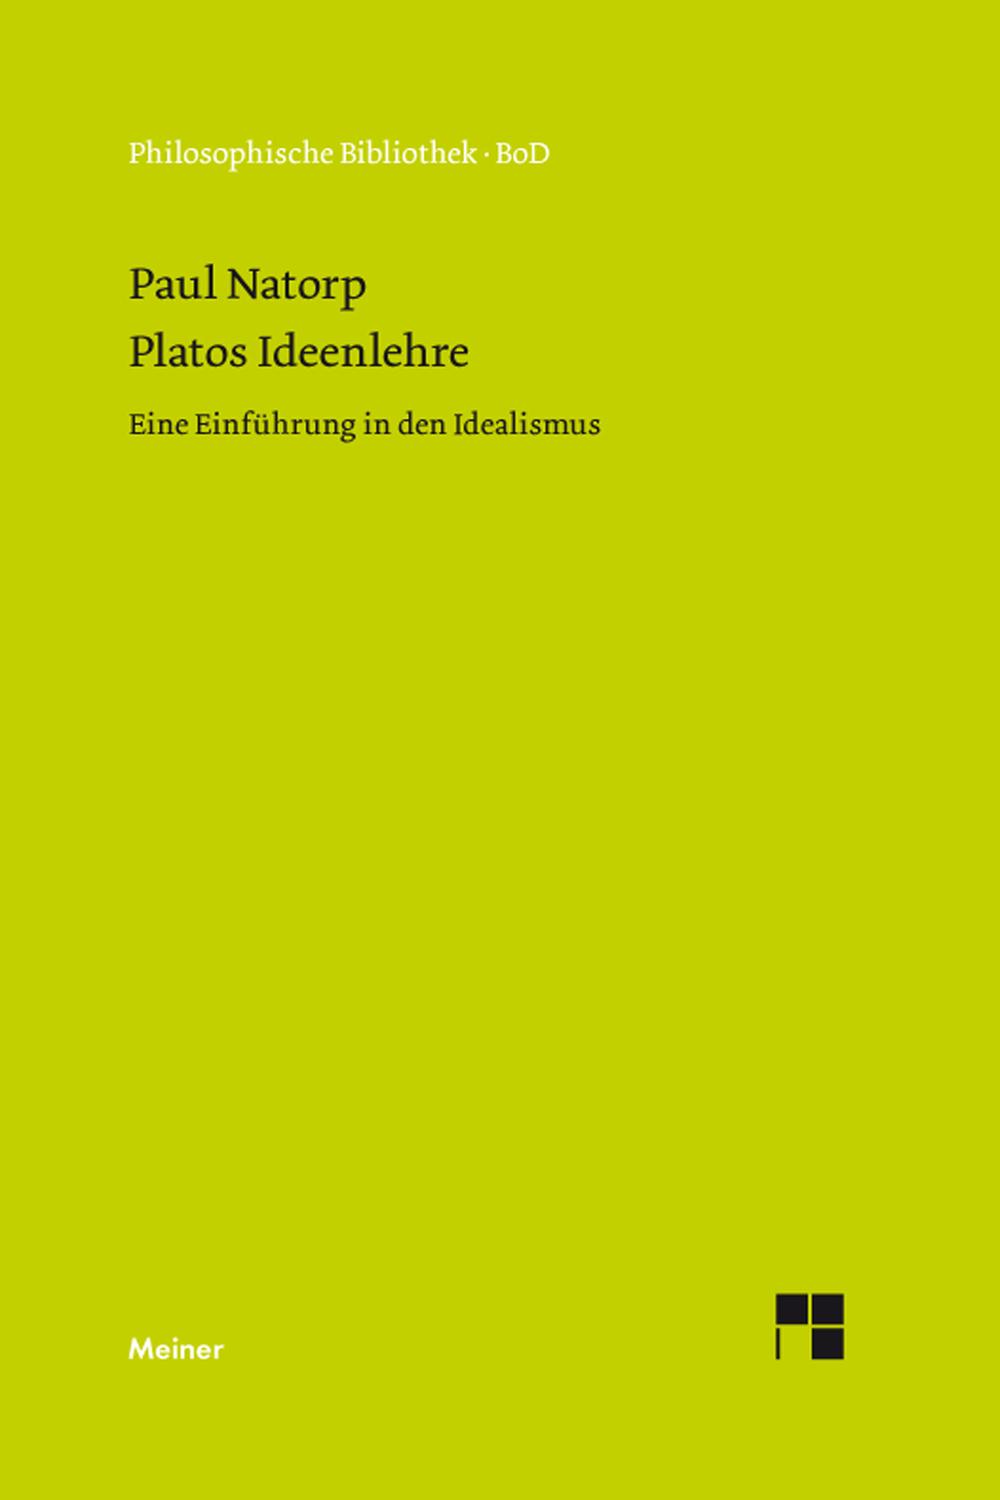 Platos Ideenlehre - Paul Natorp,,